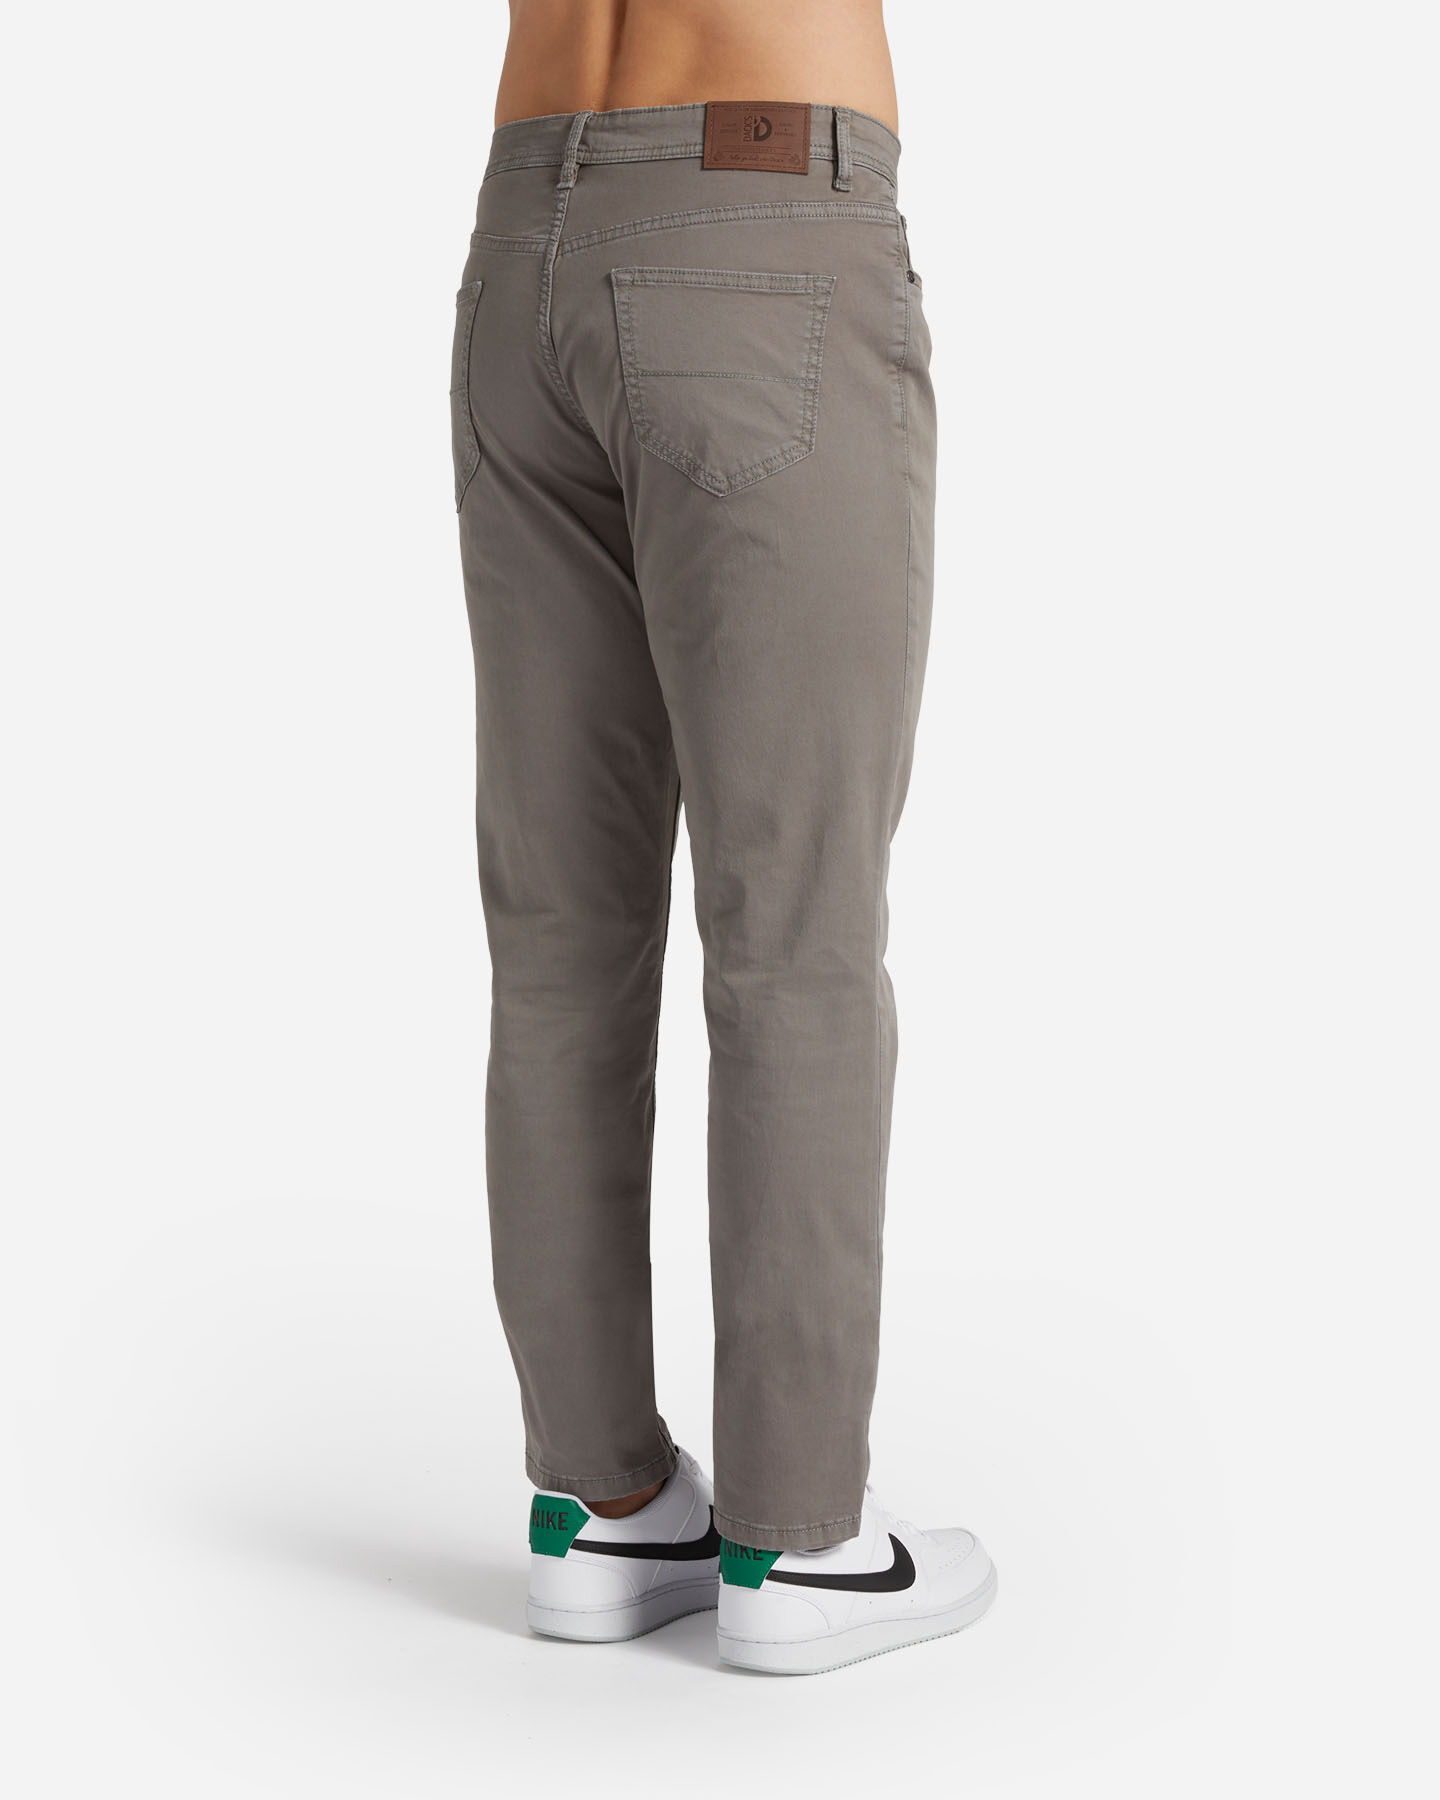  Pantalone DACK'S ESSENTIAL M S4129741|1115|44 scatto 1